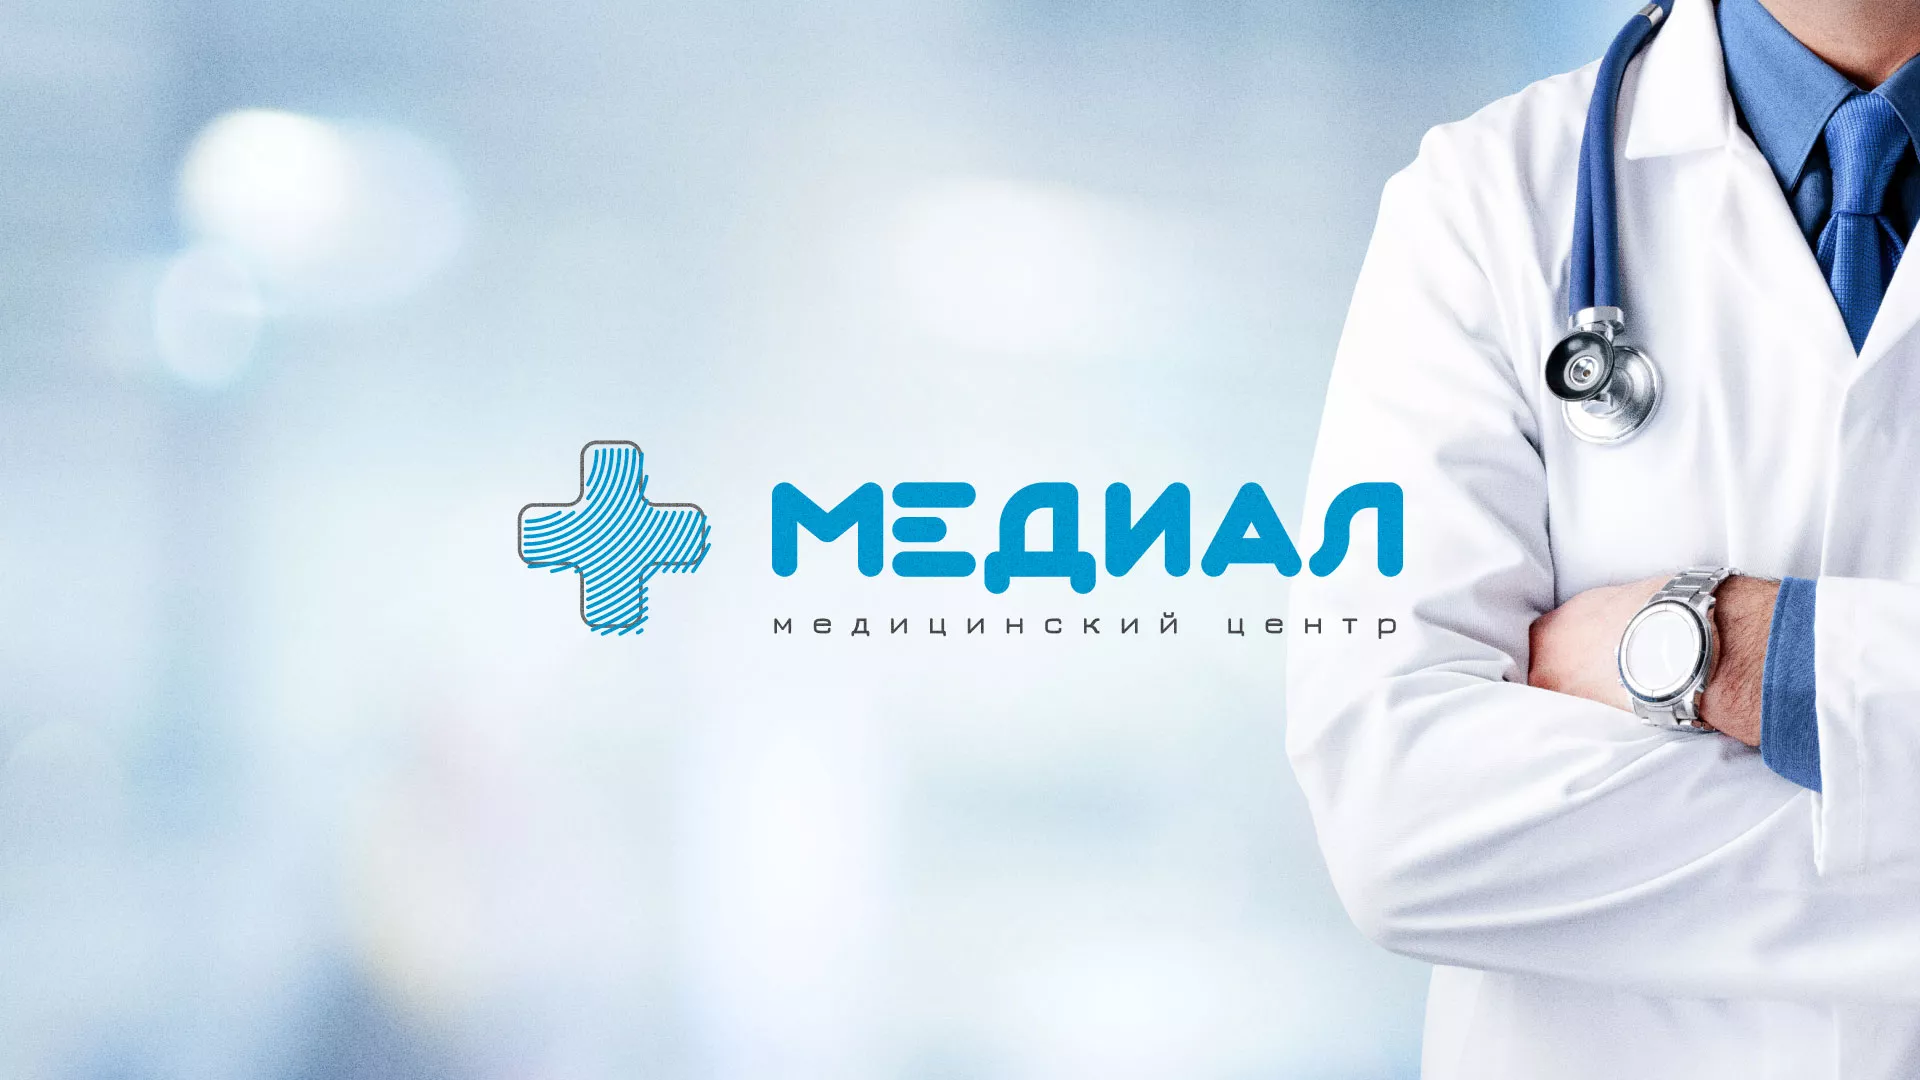 Создание сайта для медицинского центра «Медиал» в Нижнем Новгороде